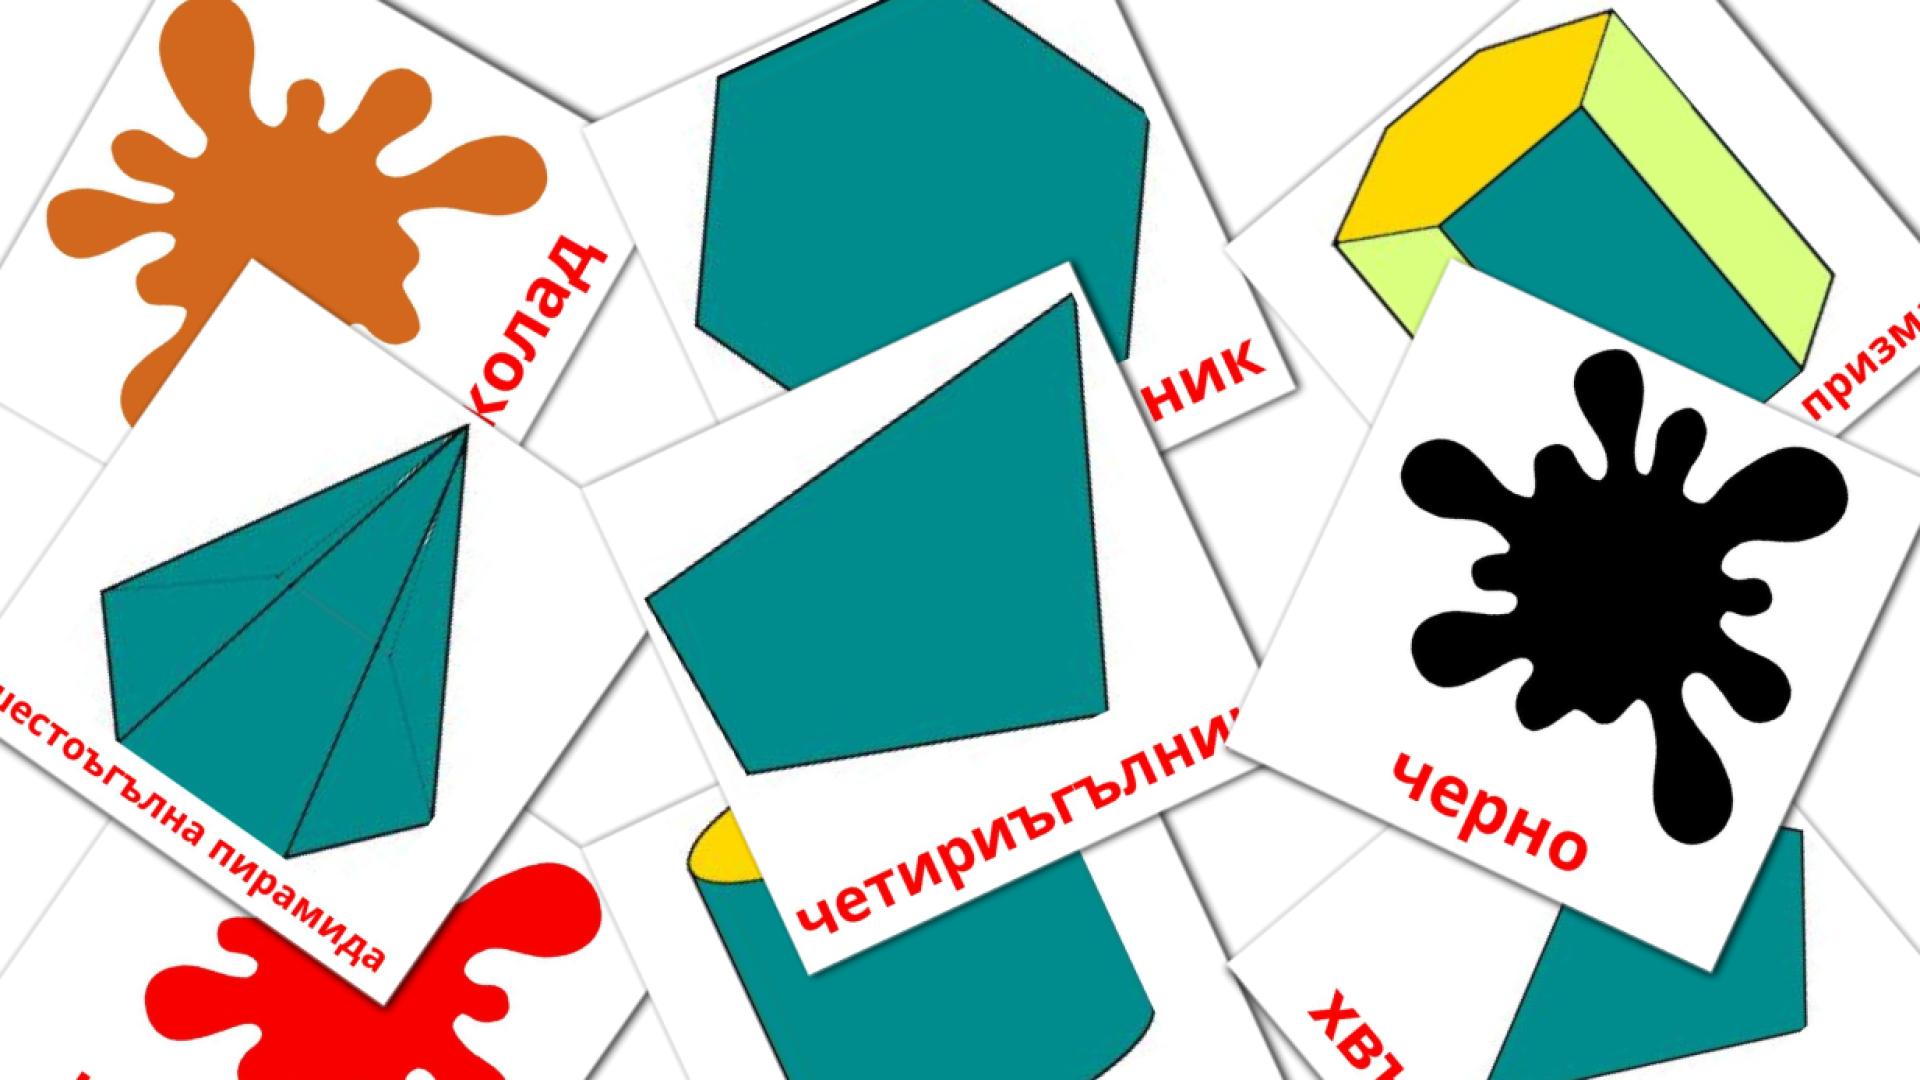 Bulgarisch Цветове и формиe Vokabelkarteikarten